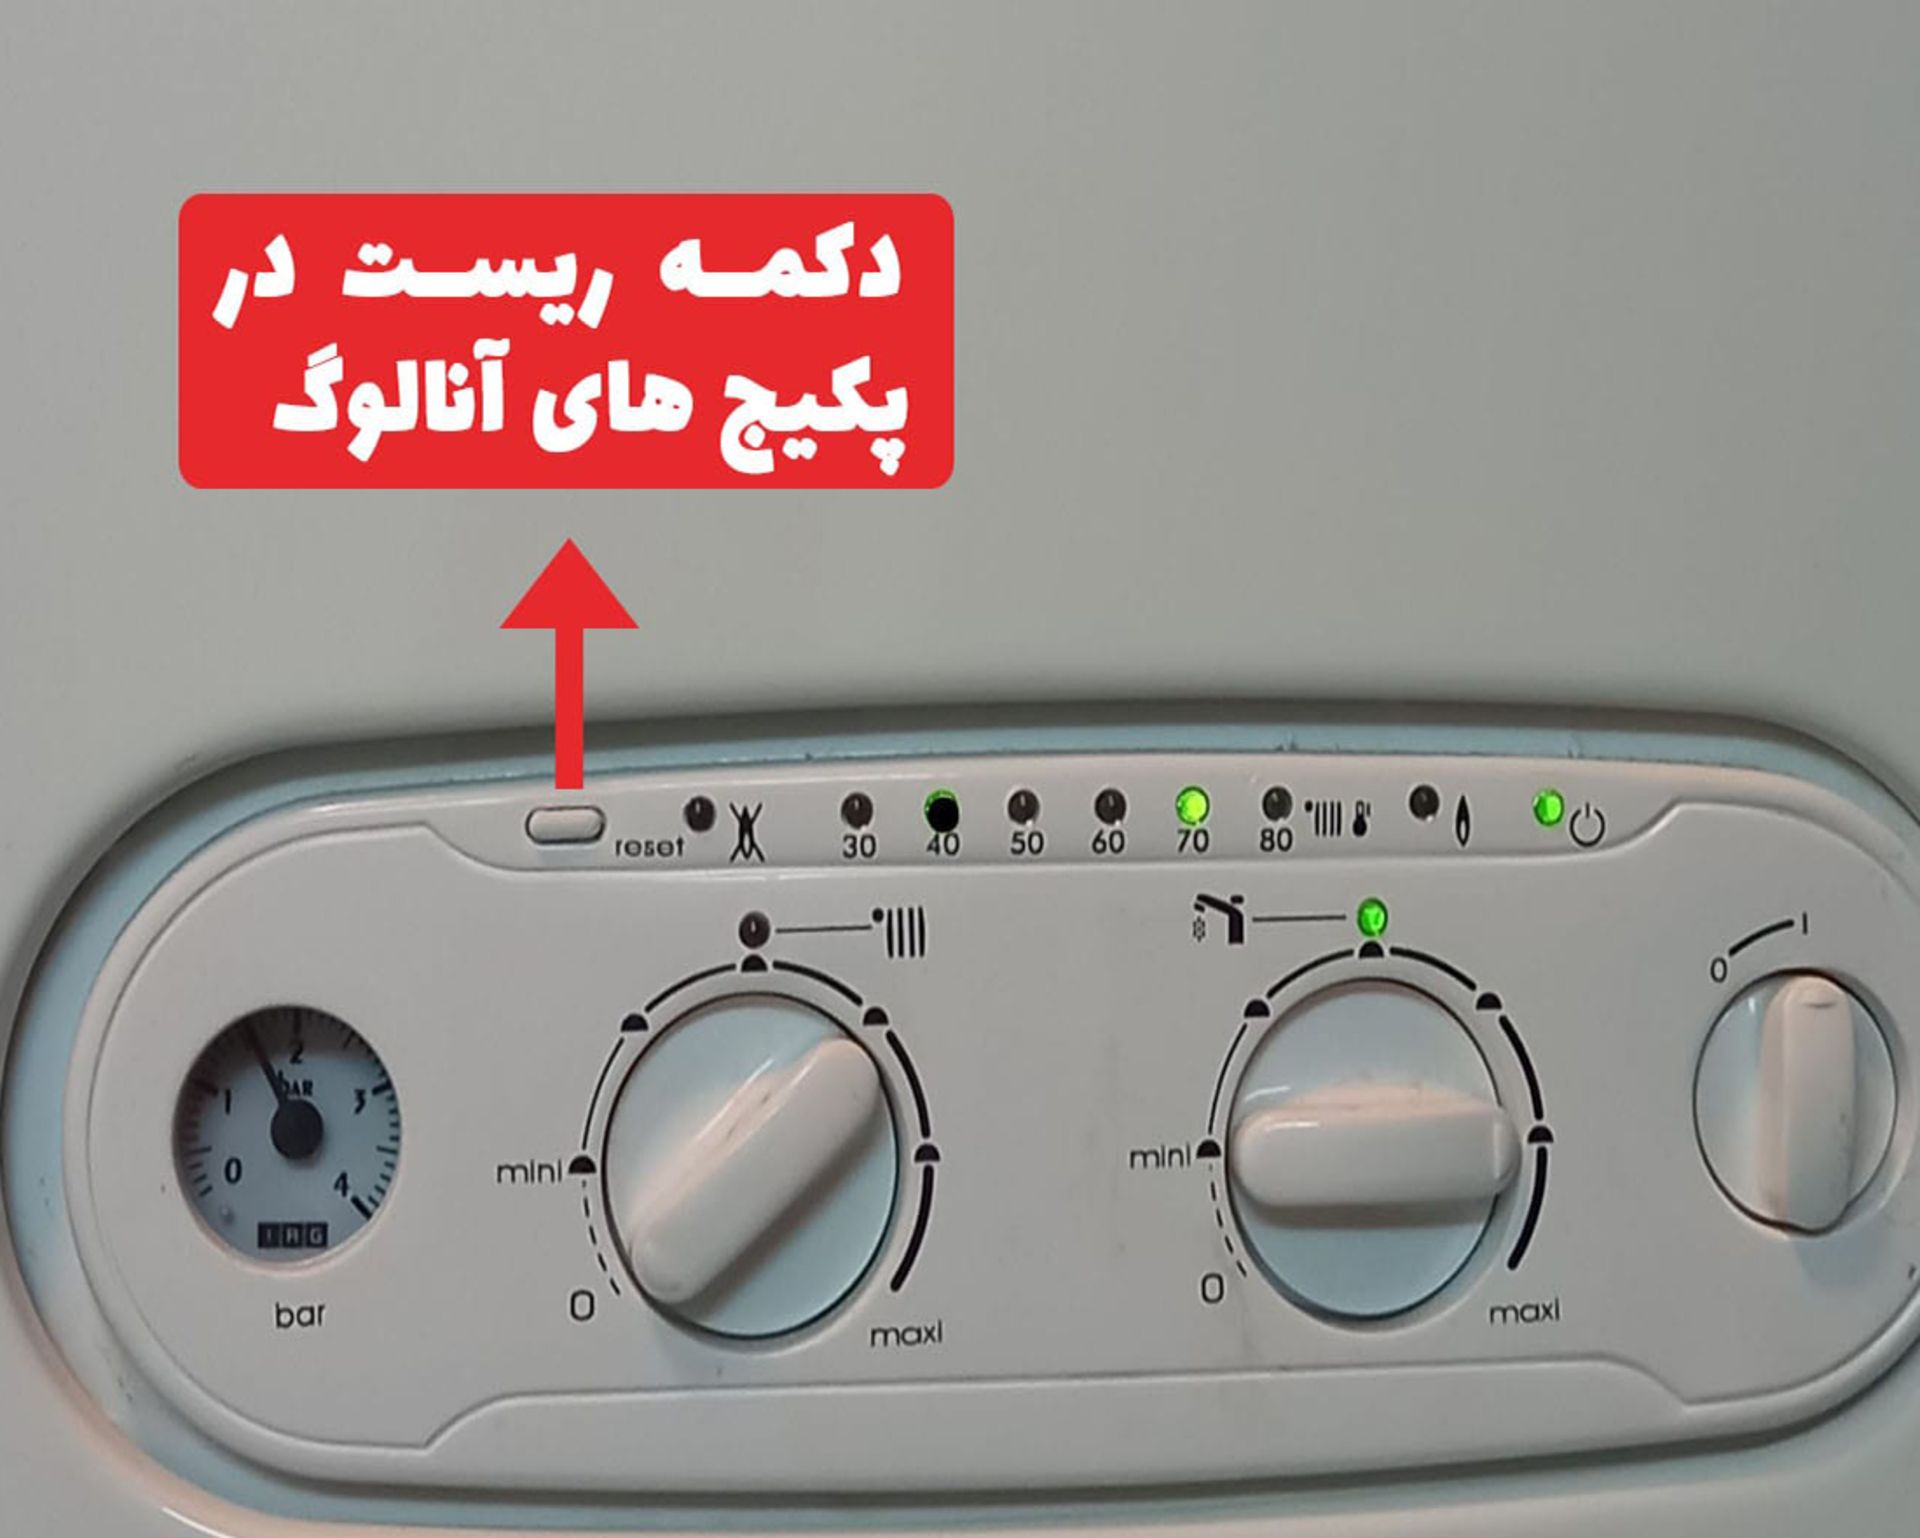 دکمه ریست در پکیج ایران رادیاتور